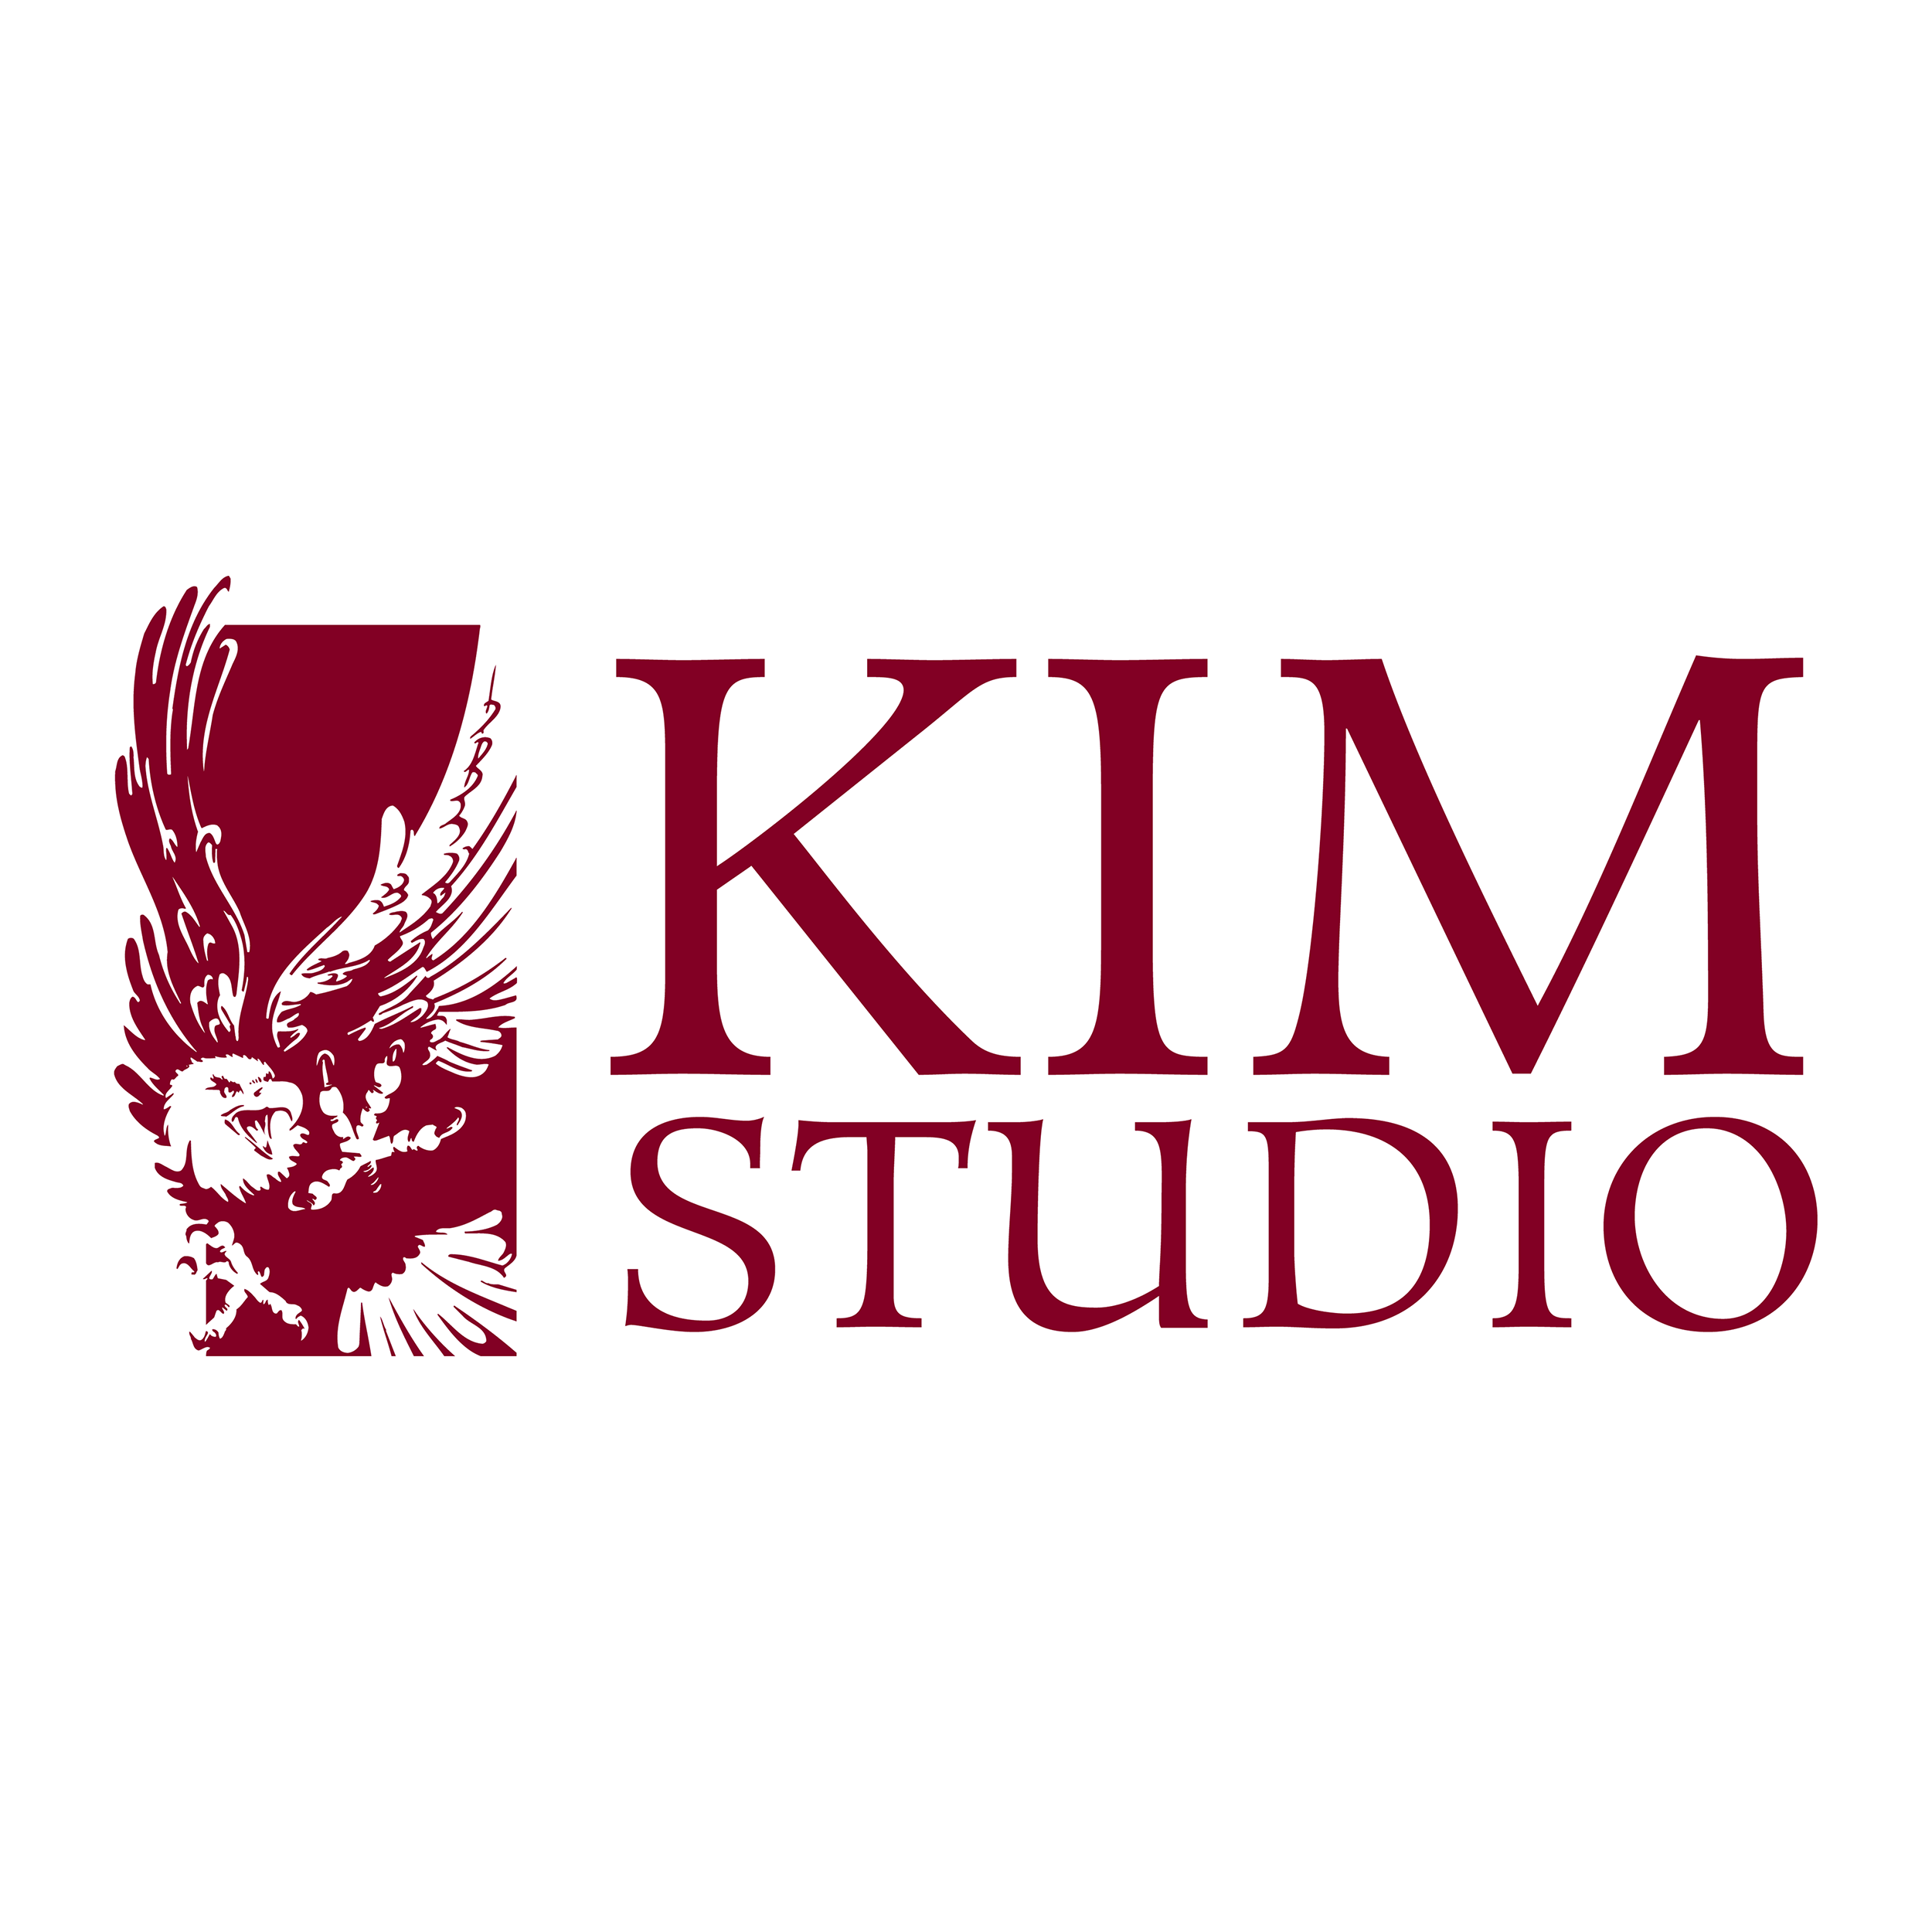 Kim Studio